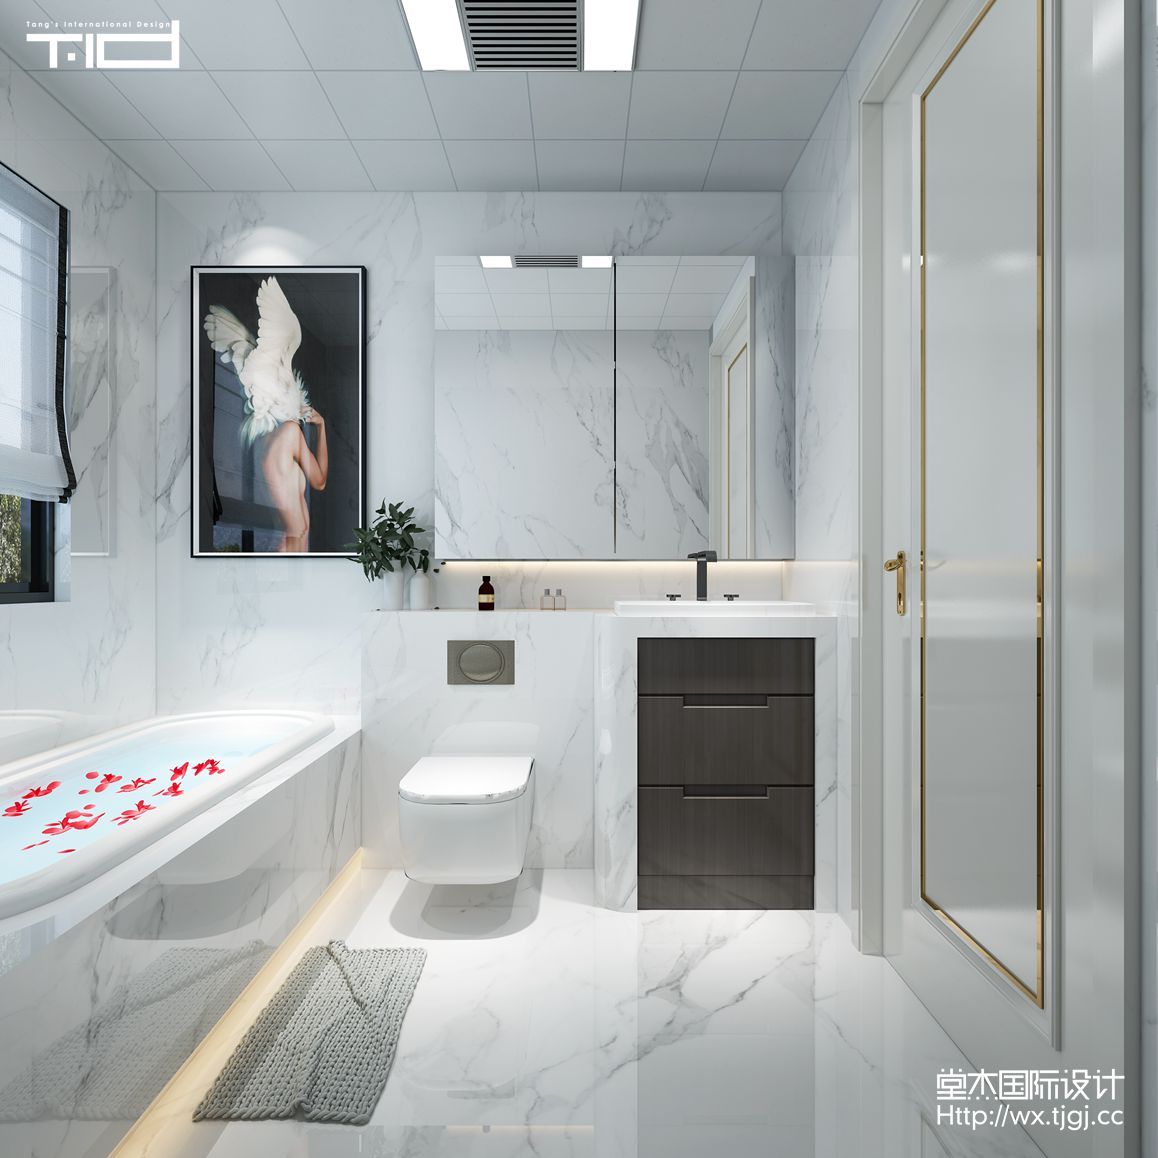 现代简约-瑷颐湾-三室两厅-146平-卫生间-装修效果图